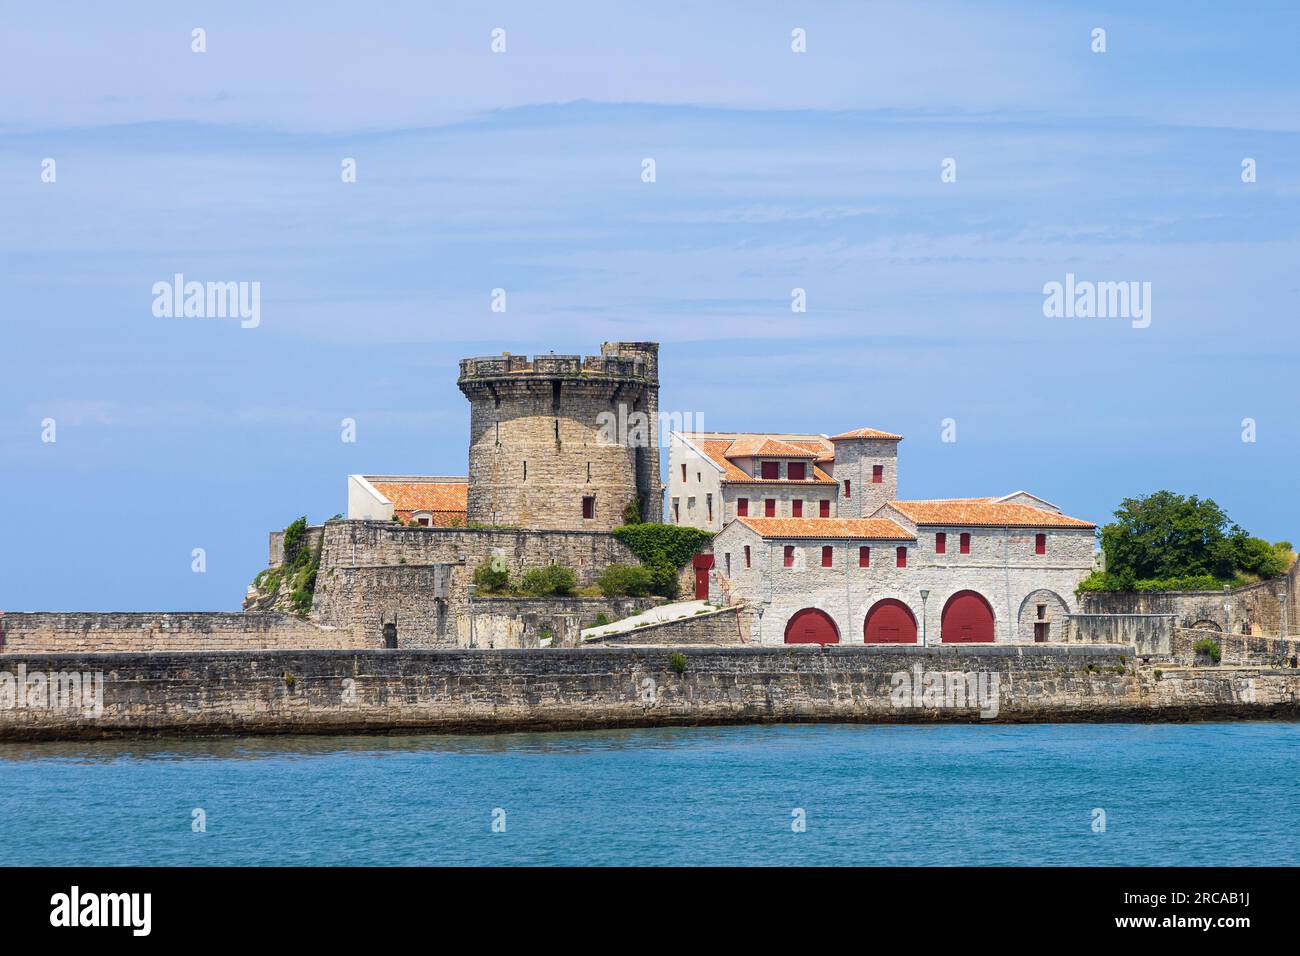 Fort de Socoa, forteresse défensive côtière historique protégeant la baie de Saint-Jean-de-Luz et le port, avec une tour circulaire. Ciboure, France Banque D'Images